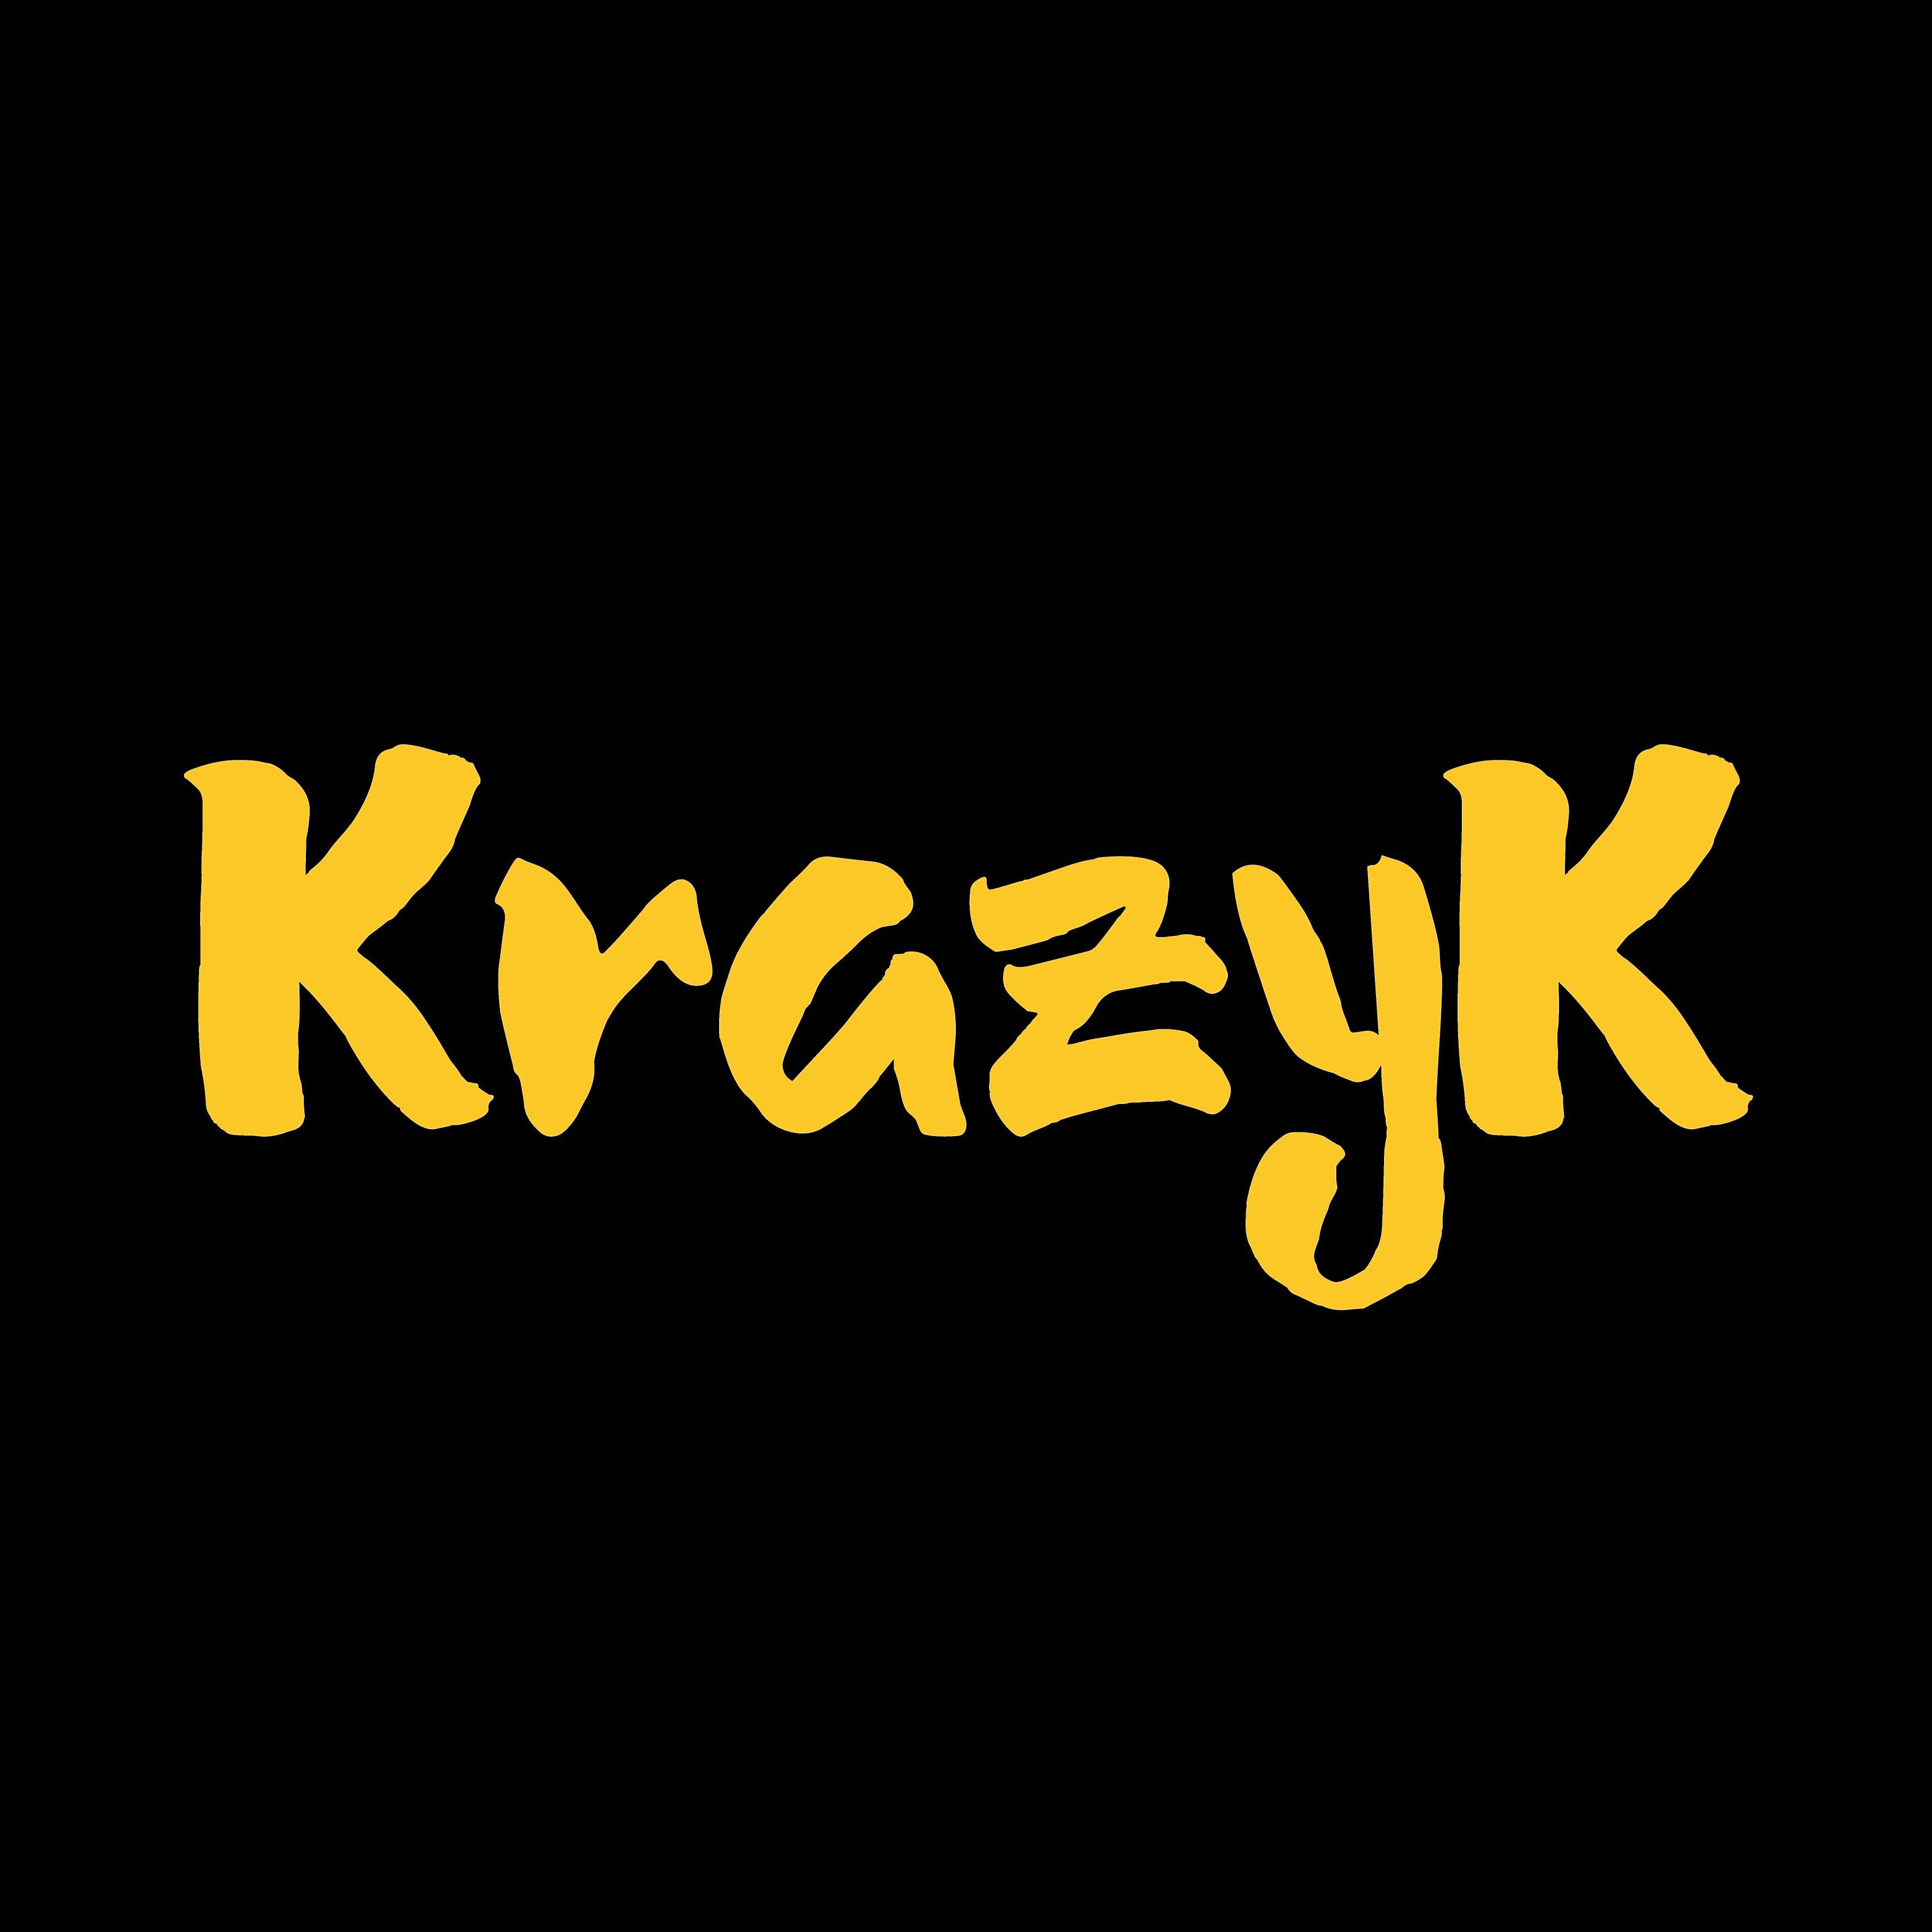 Krazy Logo - Krazy Logo for KrazyK — Steemit